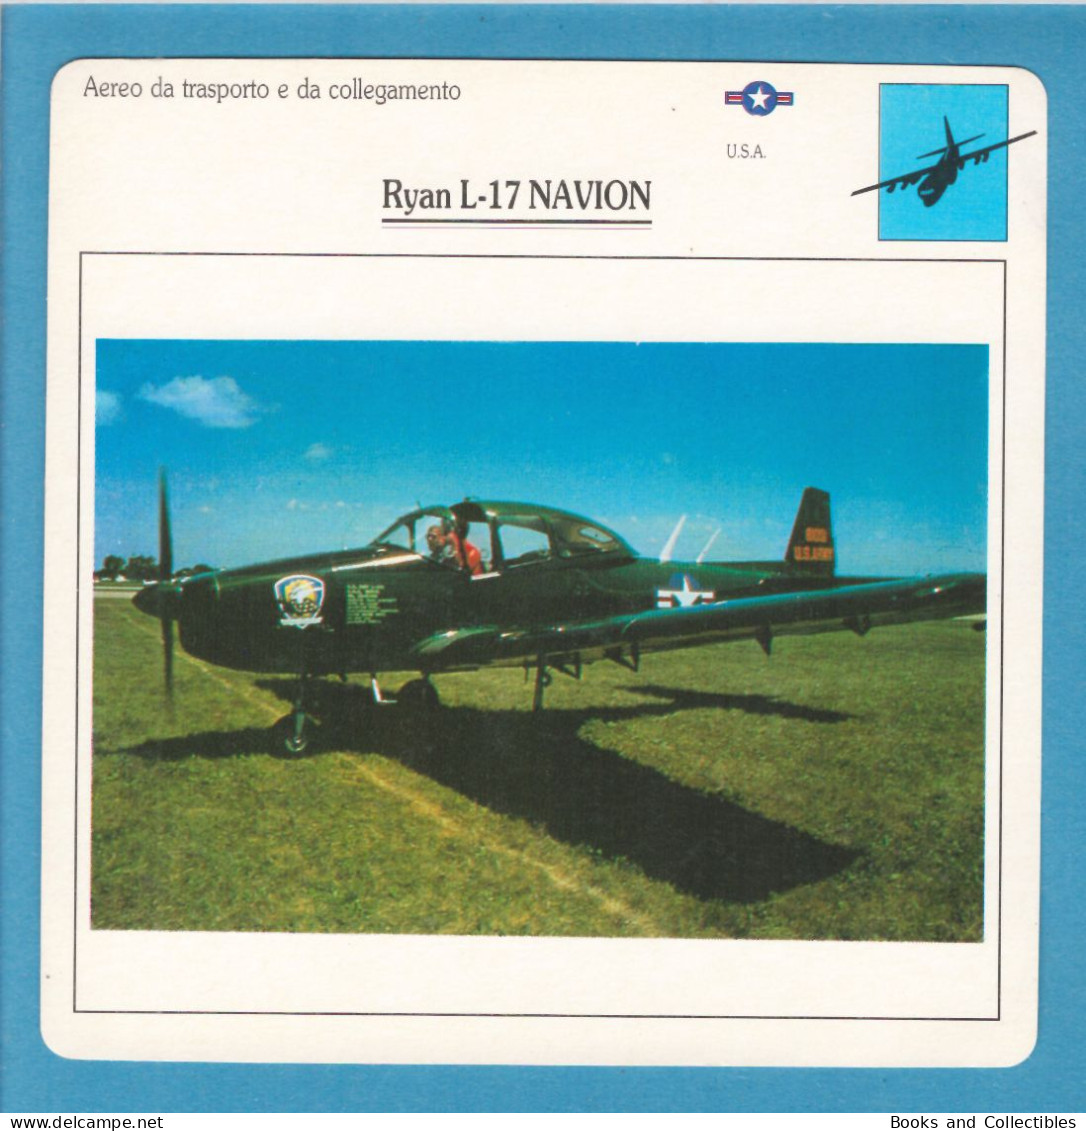 DeAgostini Educational Sheet "Warplanes" / Ryan L-17 NAVION (U.S.A.) - Aviation